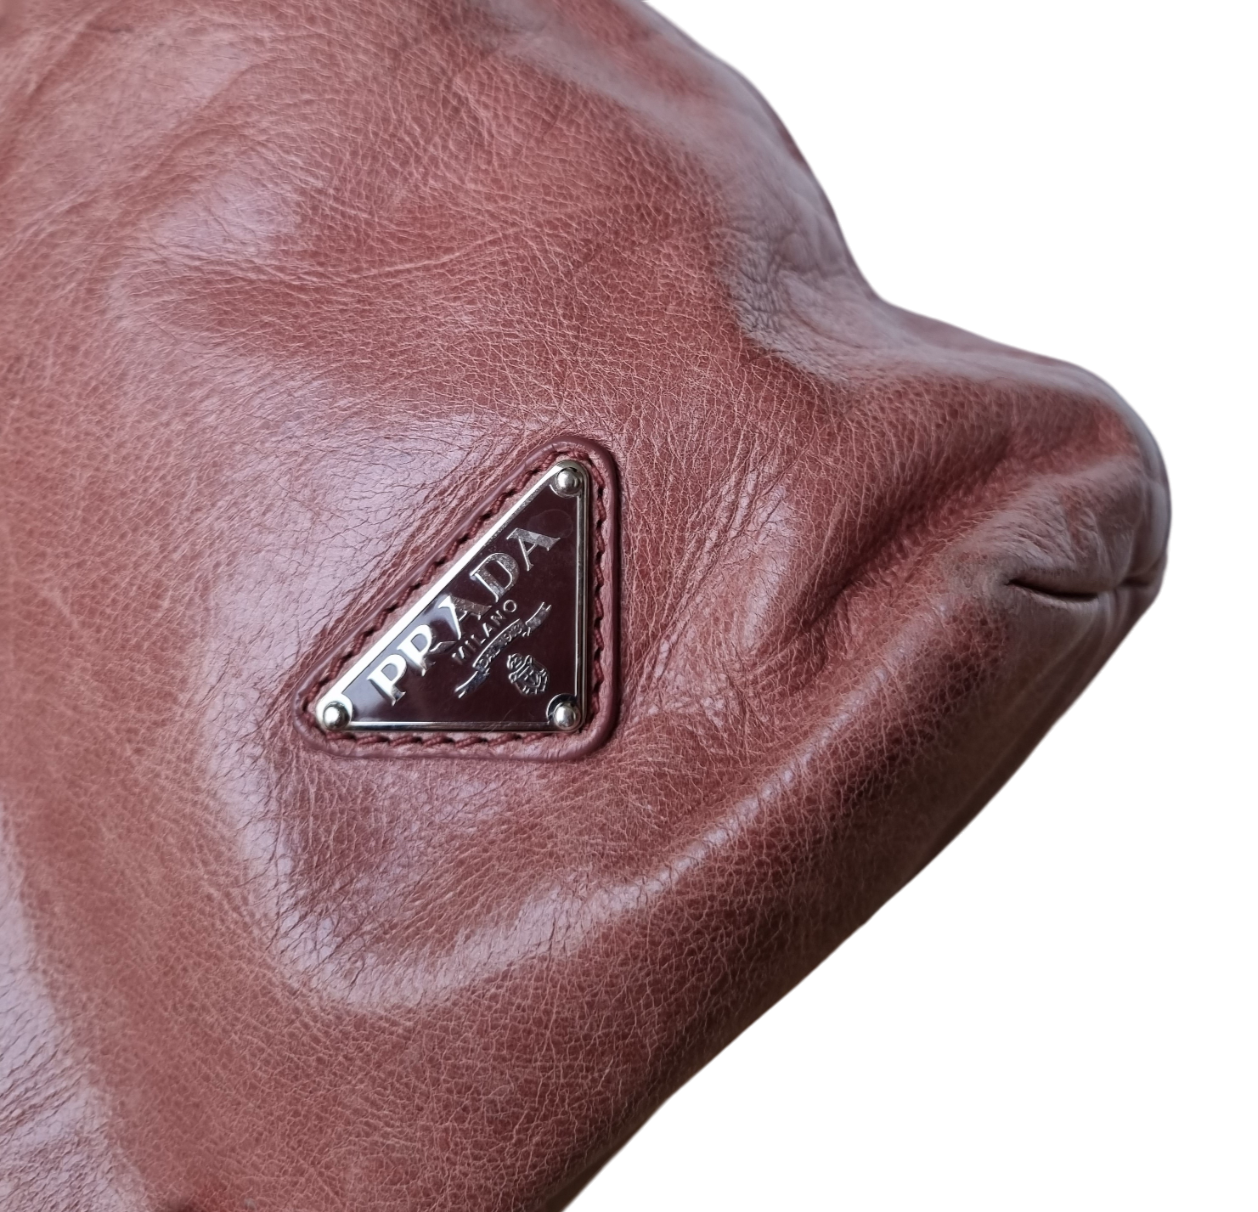 Prada Pink Leather Tote Bag